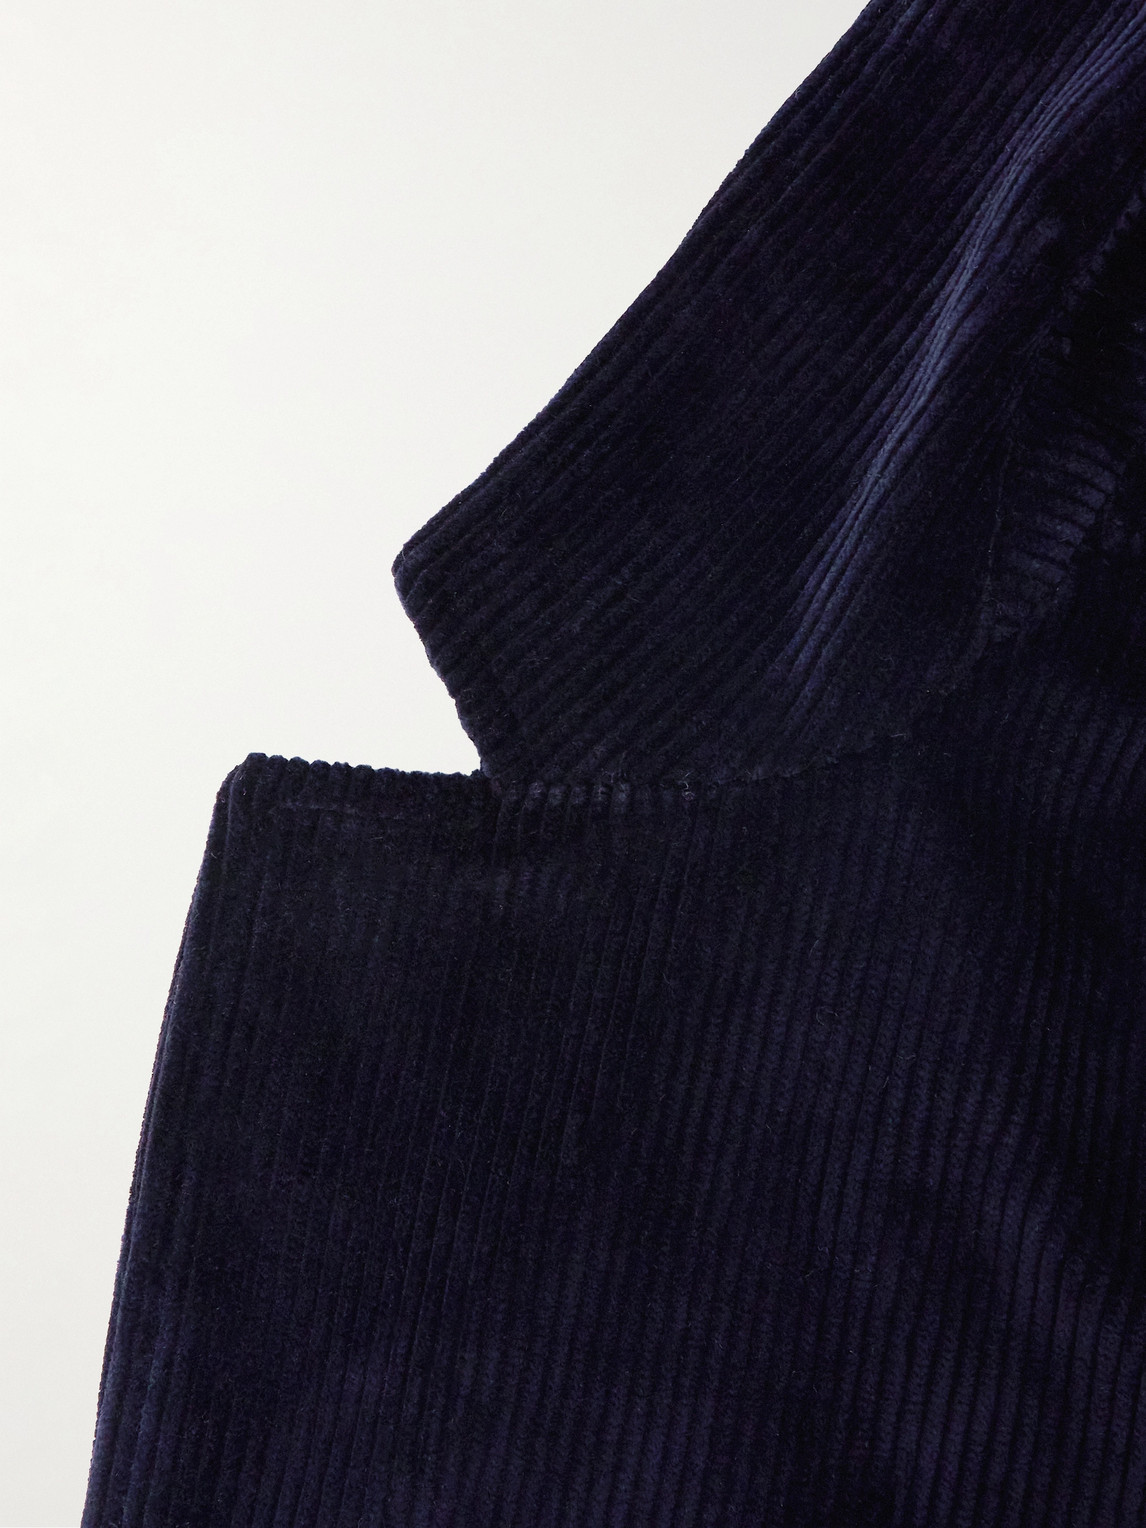 Shop De Bonne Facture Cotton-corduroy Suit Jacket In Blue